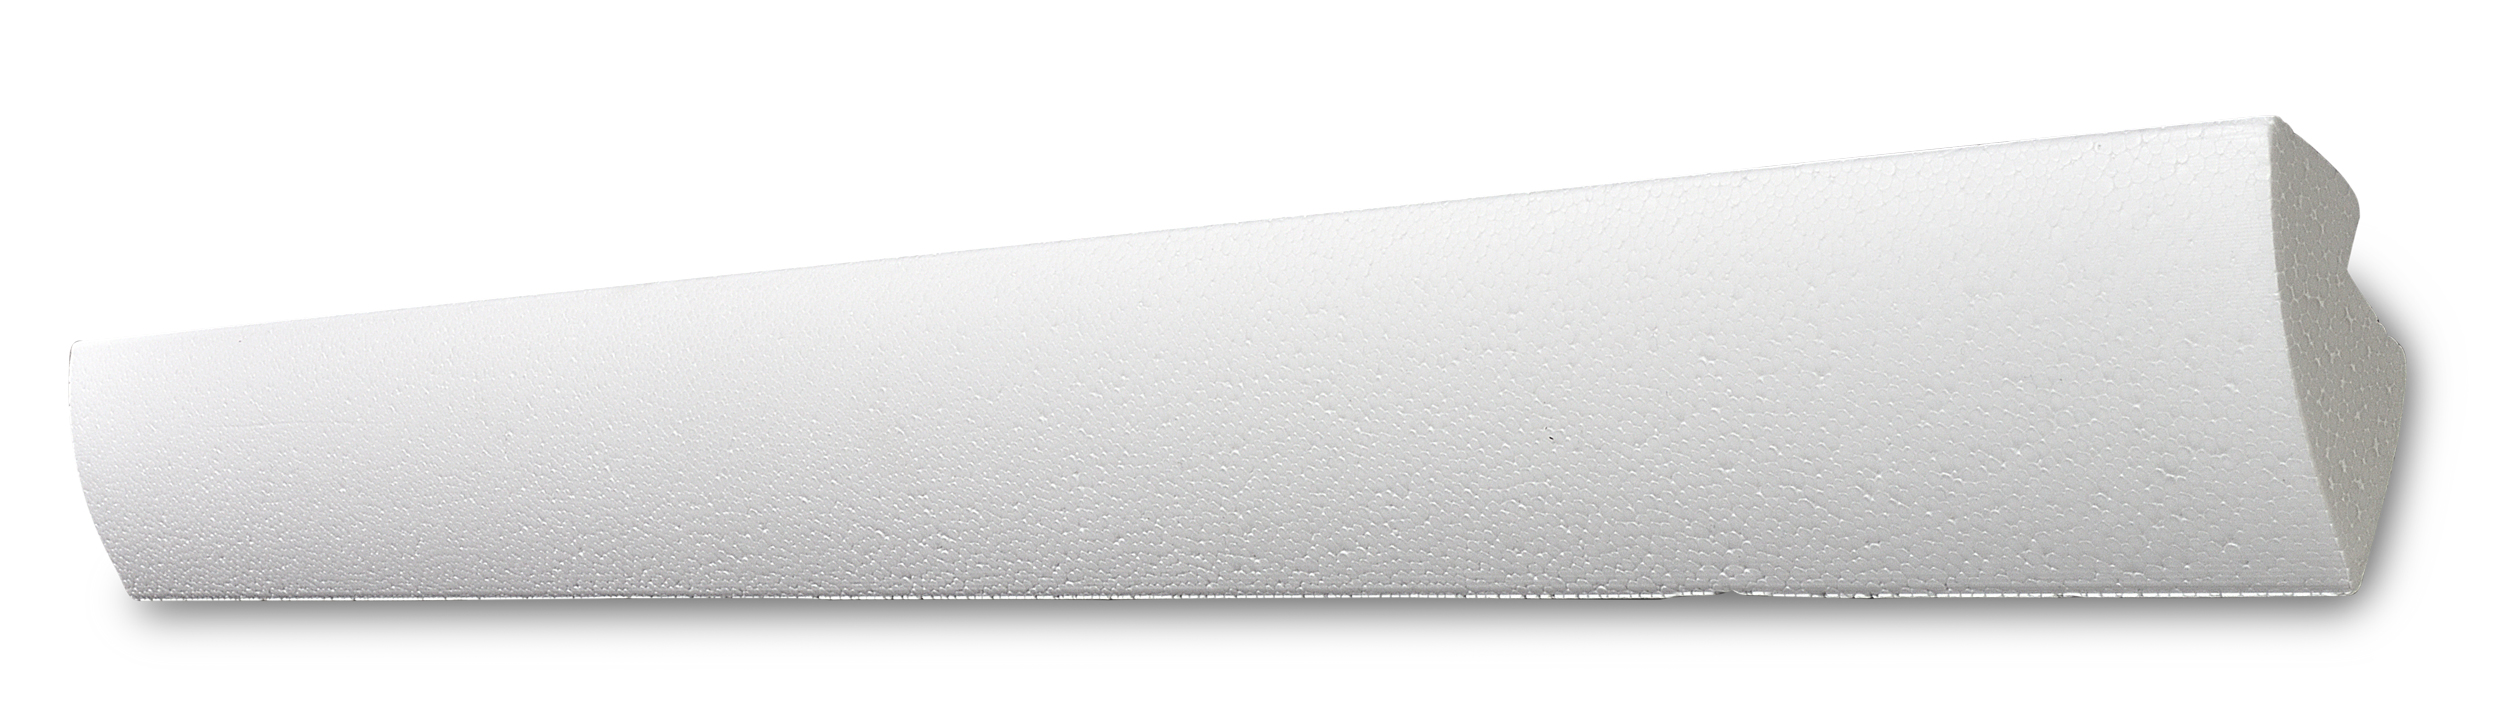 Decosa Lichtleiste G35 (Karoline), weiß, 42 x 45 mm, Länge: 2 m